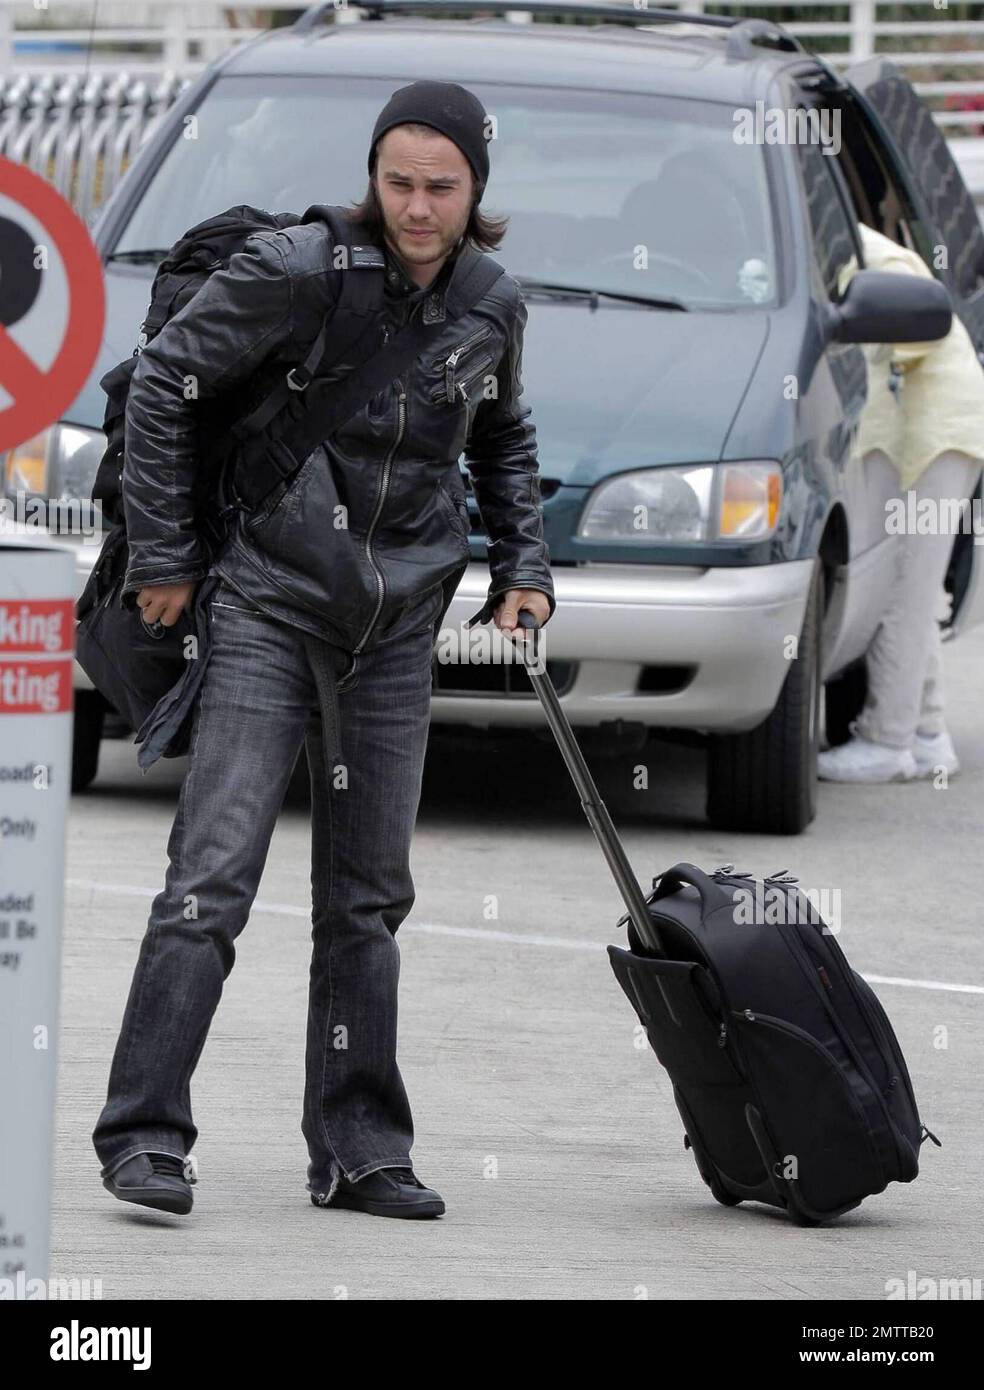 Taylor Kitsch schleppt seine eigenen Taschen auf dem Weg durch LAX, um einen Flug zu erwischen. Der X-Men Schauspieler trug eine Lederjacke und einen Hut, musste aber einige Schichten für die Sicherheitskontrolle ausziehen. Los Angeles, Ca. 6/2/09. Stockfoto